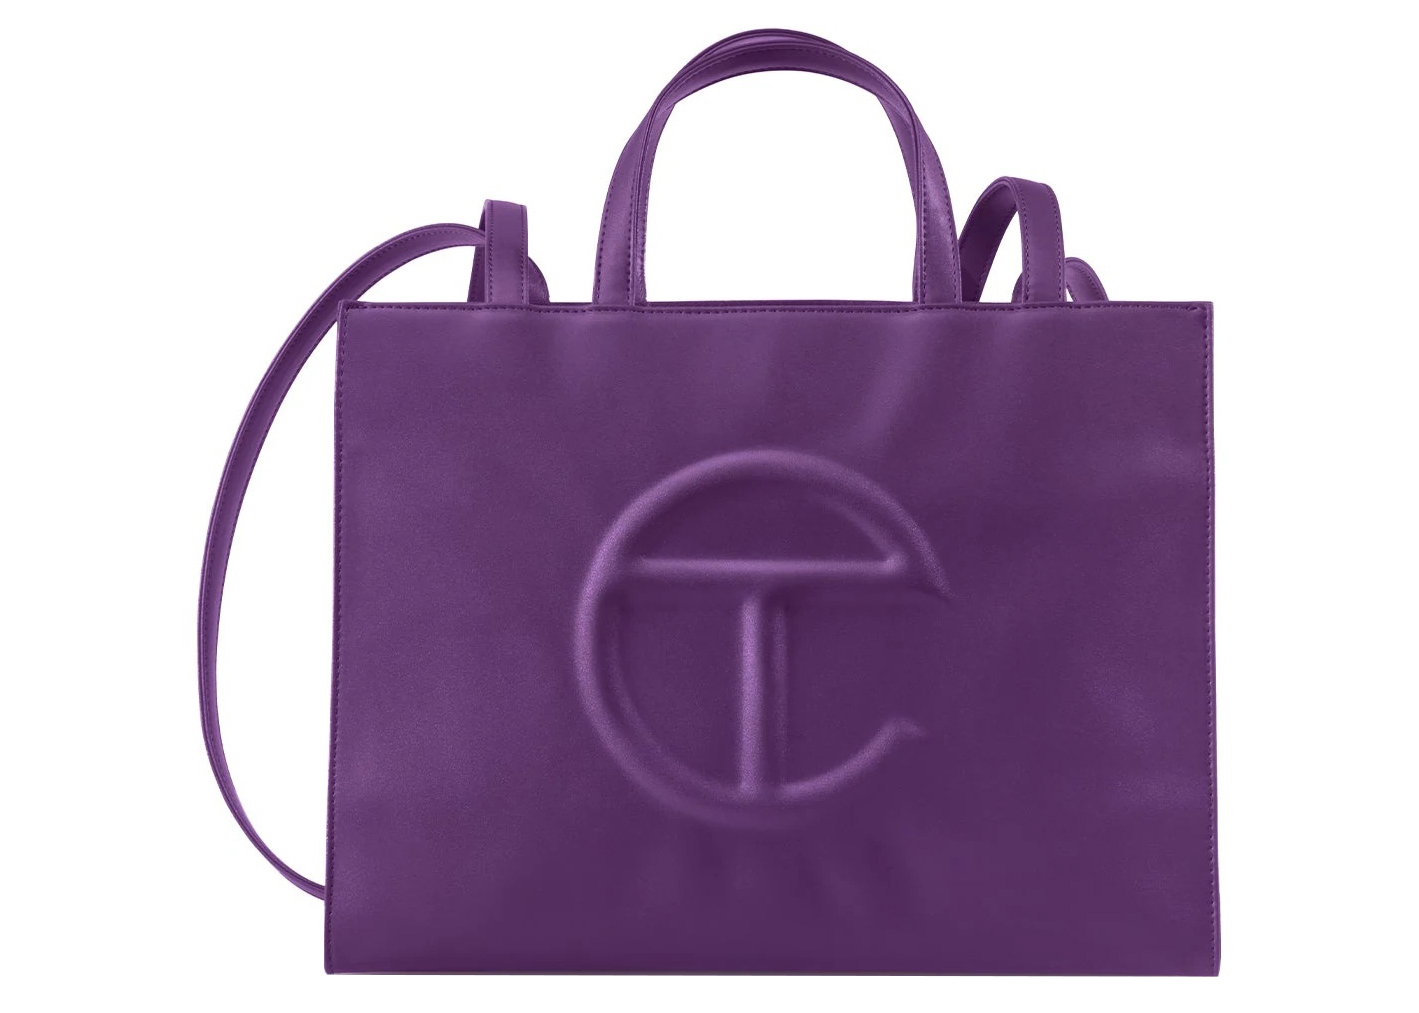 Telfar Shopping Bag Medium Azalea in Vegan Leather - US